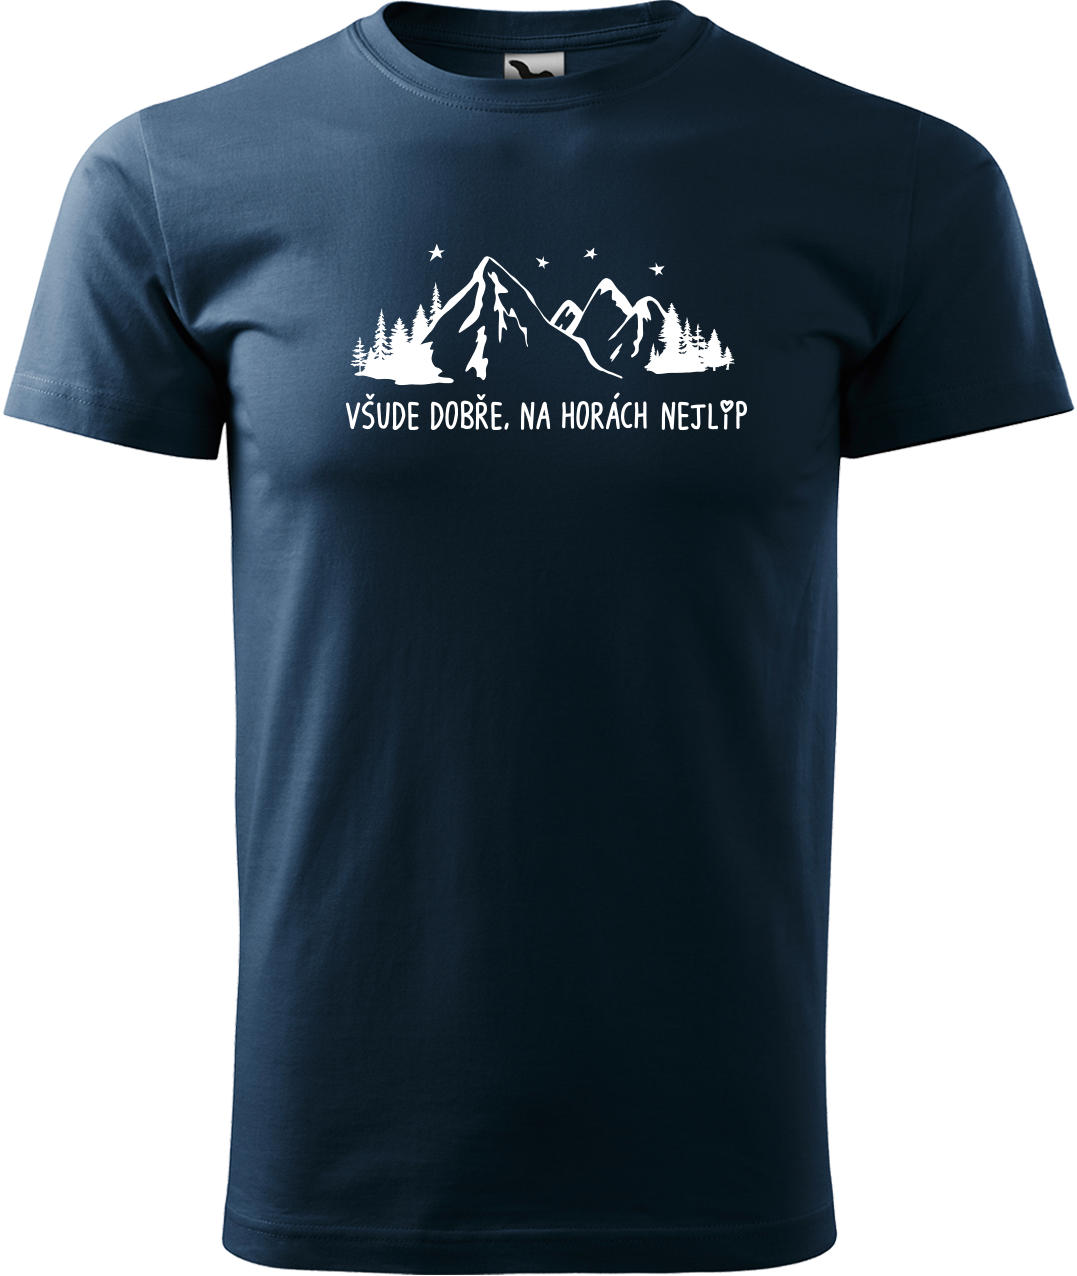 Pánské tričko na hory - Všude dobře, na horách nejlíp Velikost: XL, Barva: Námořní modrá (02)